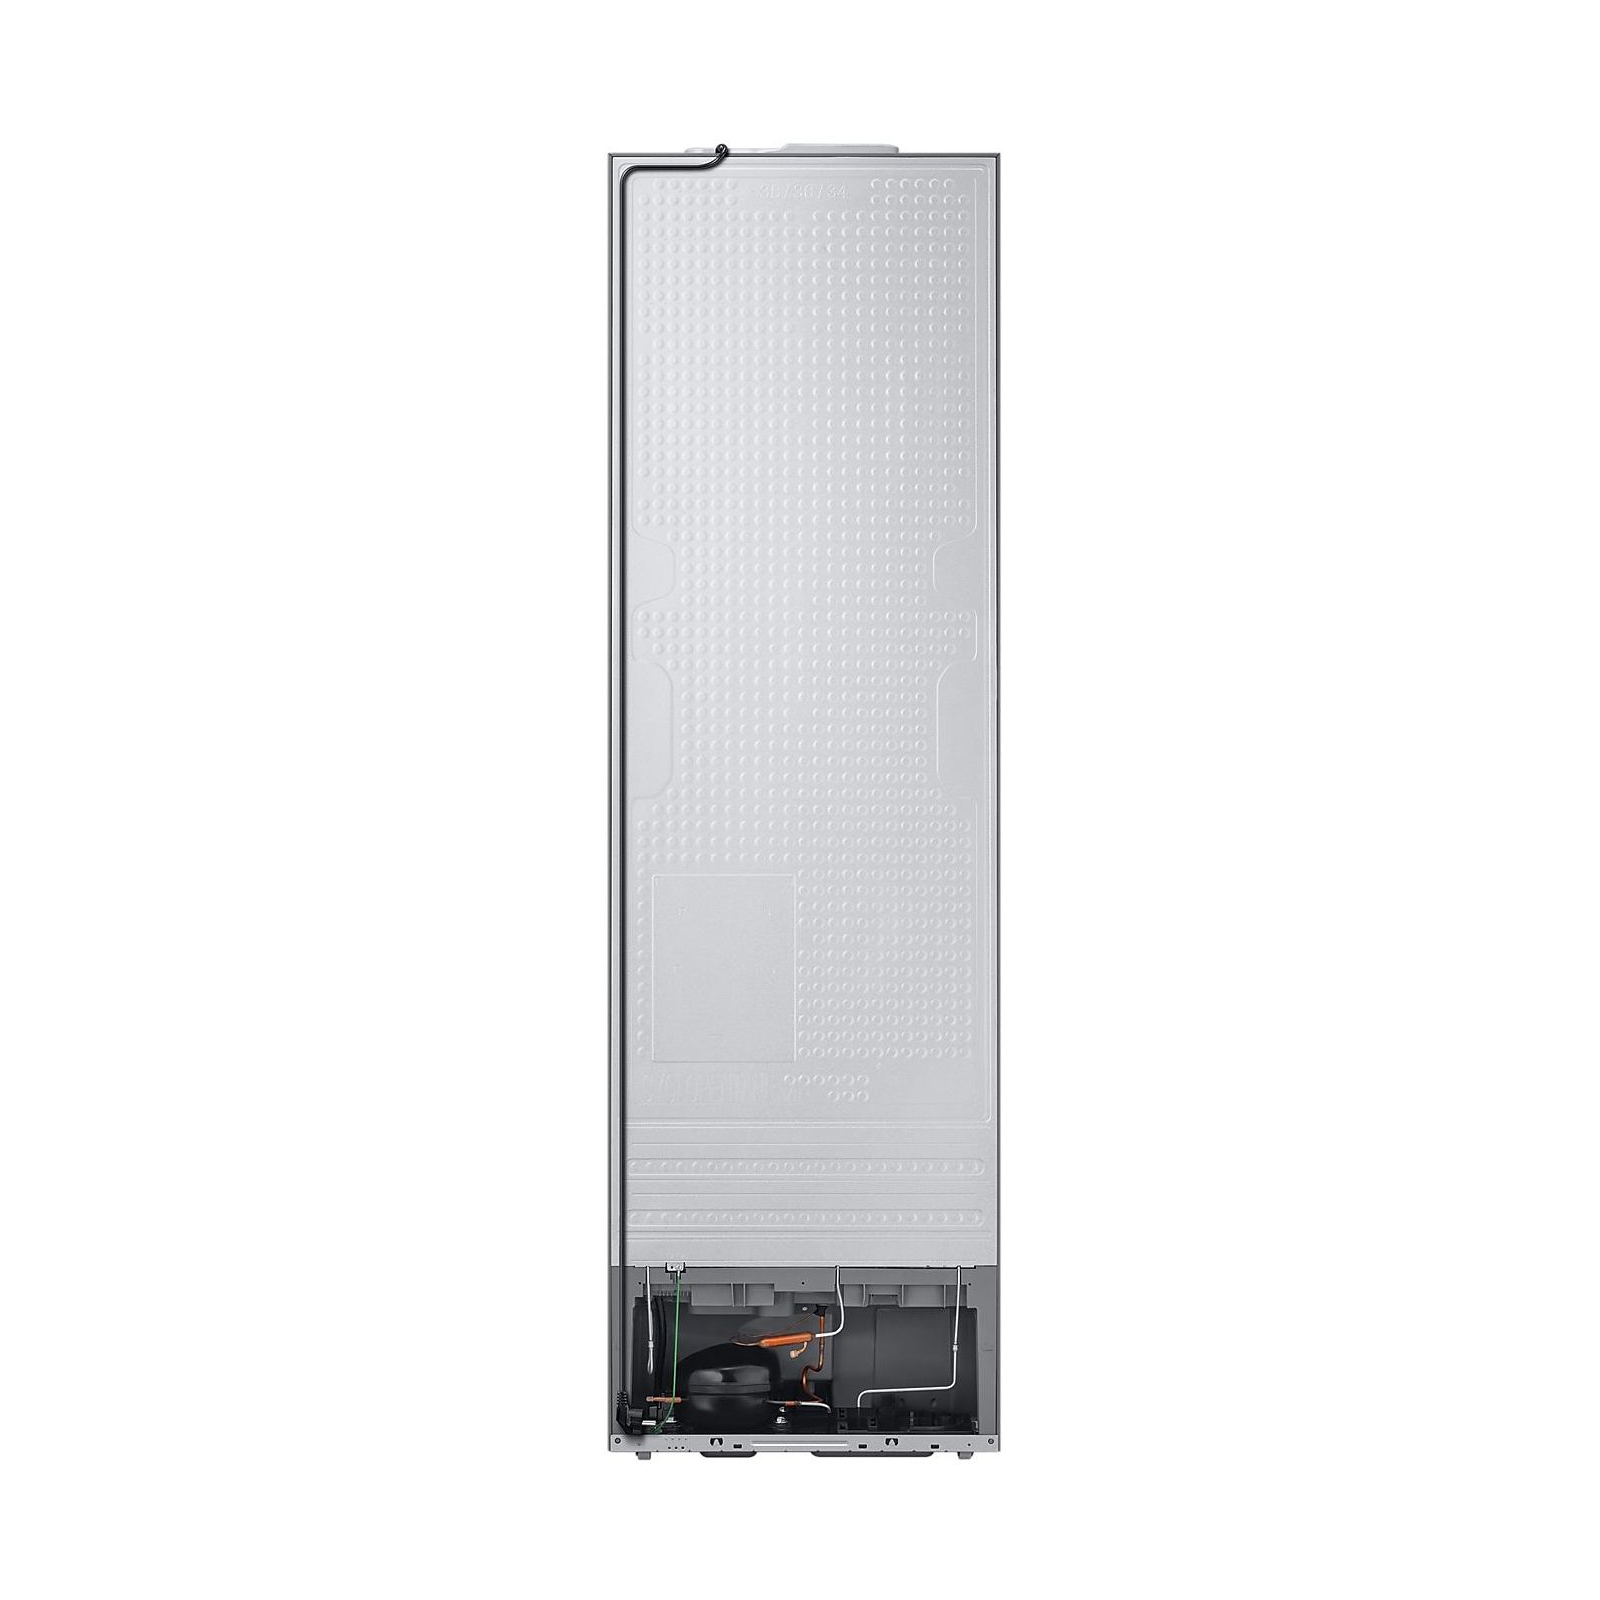 Холодильник Samsung RB38A6B6239/UA изображение 7